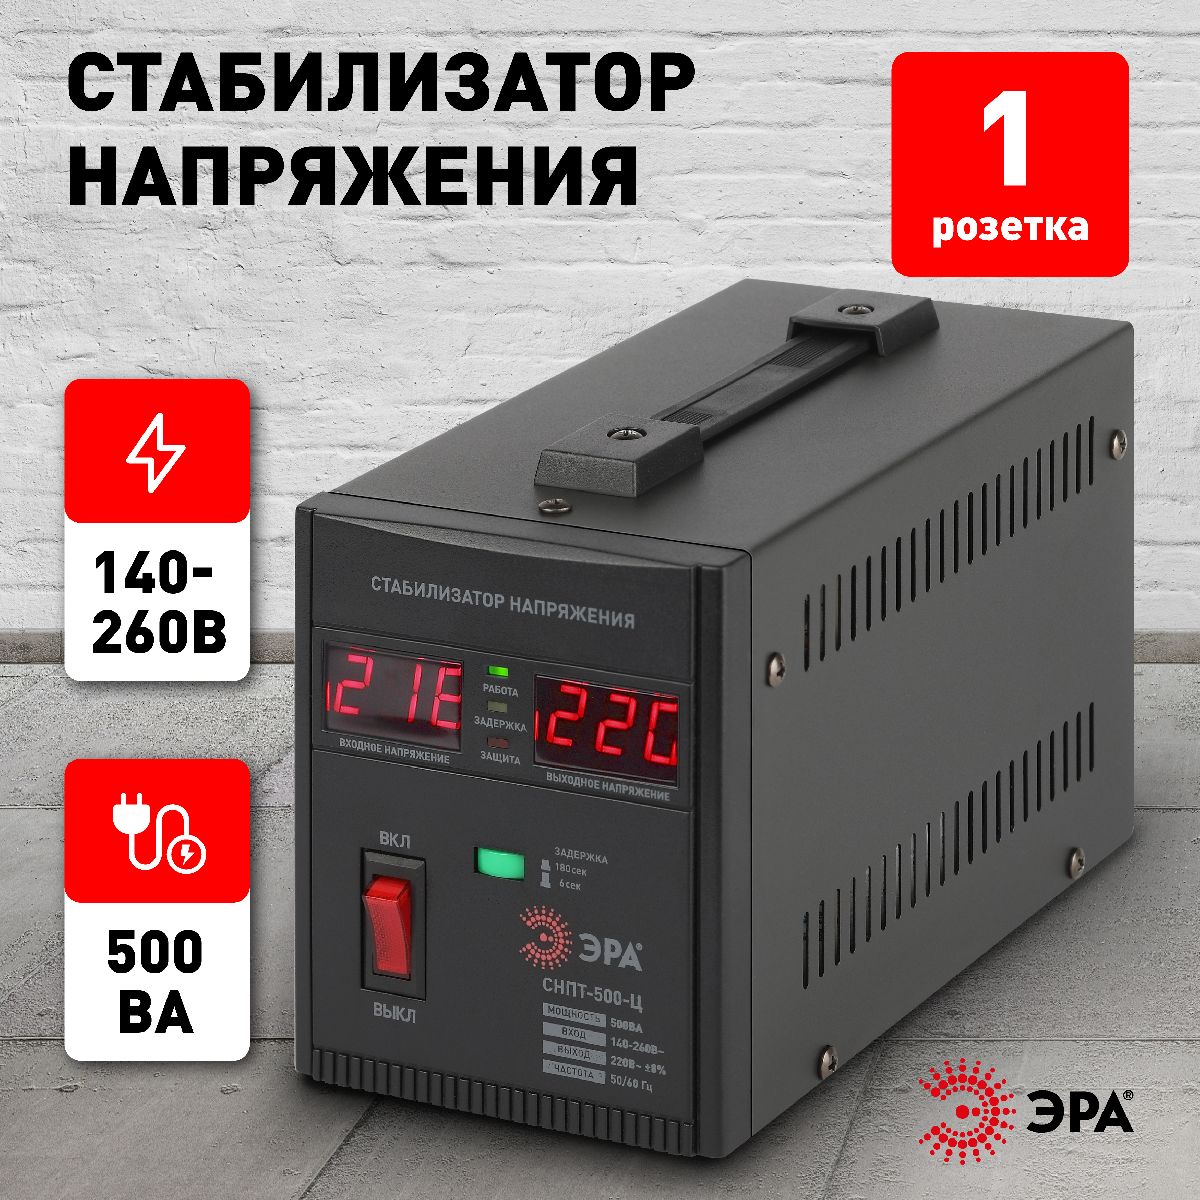 Стабилизатор напряжения переносной Эра СНПТ-500-Ц Б0020157